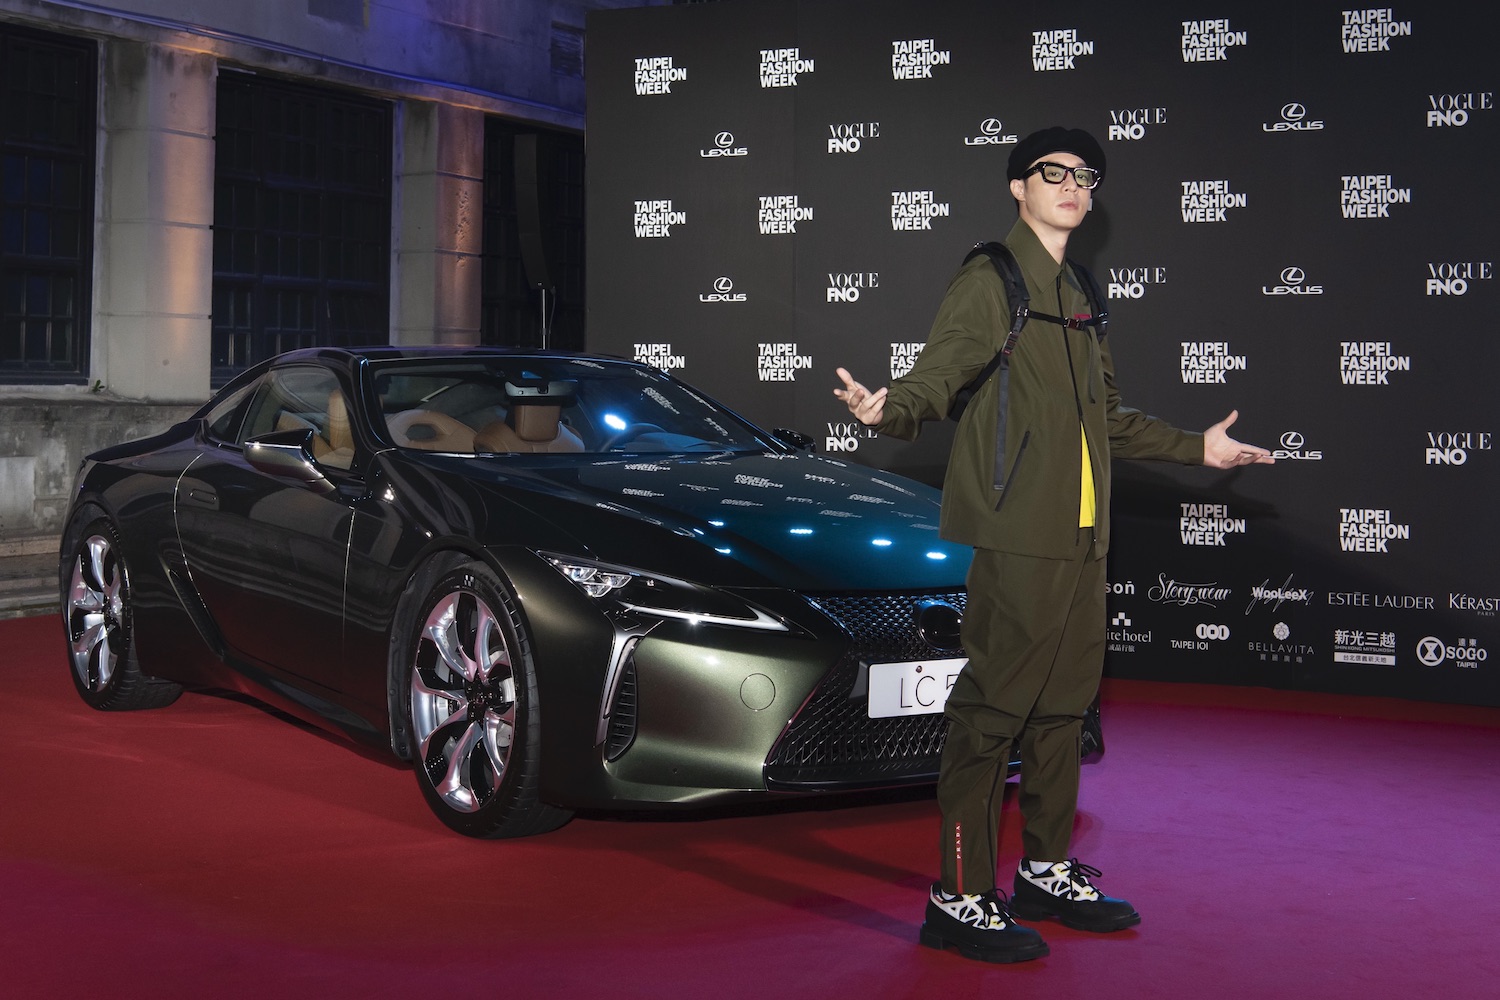 2019臺北時裝週周湯豪與 Lexus 限量版 LC 合影。